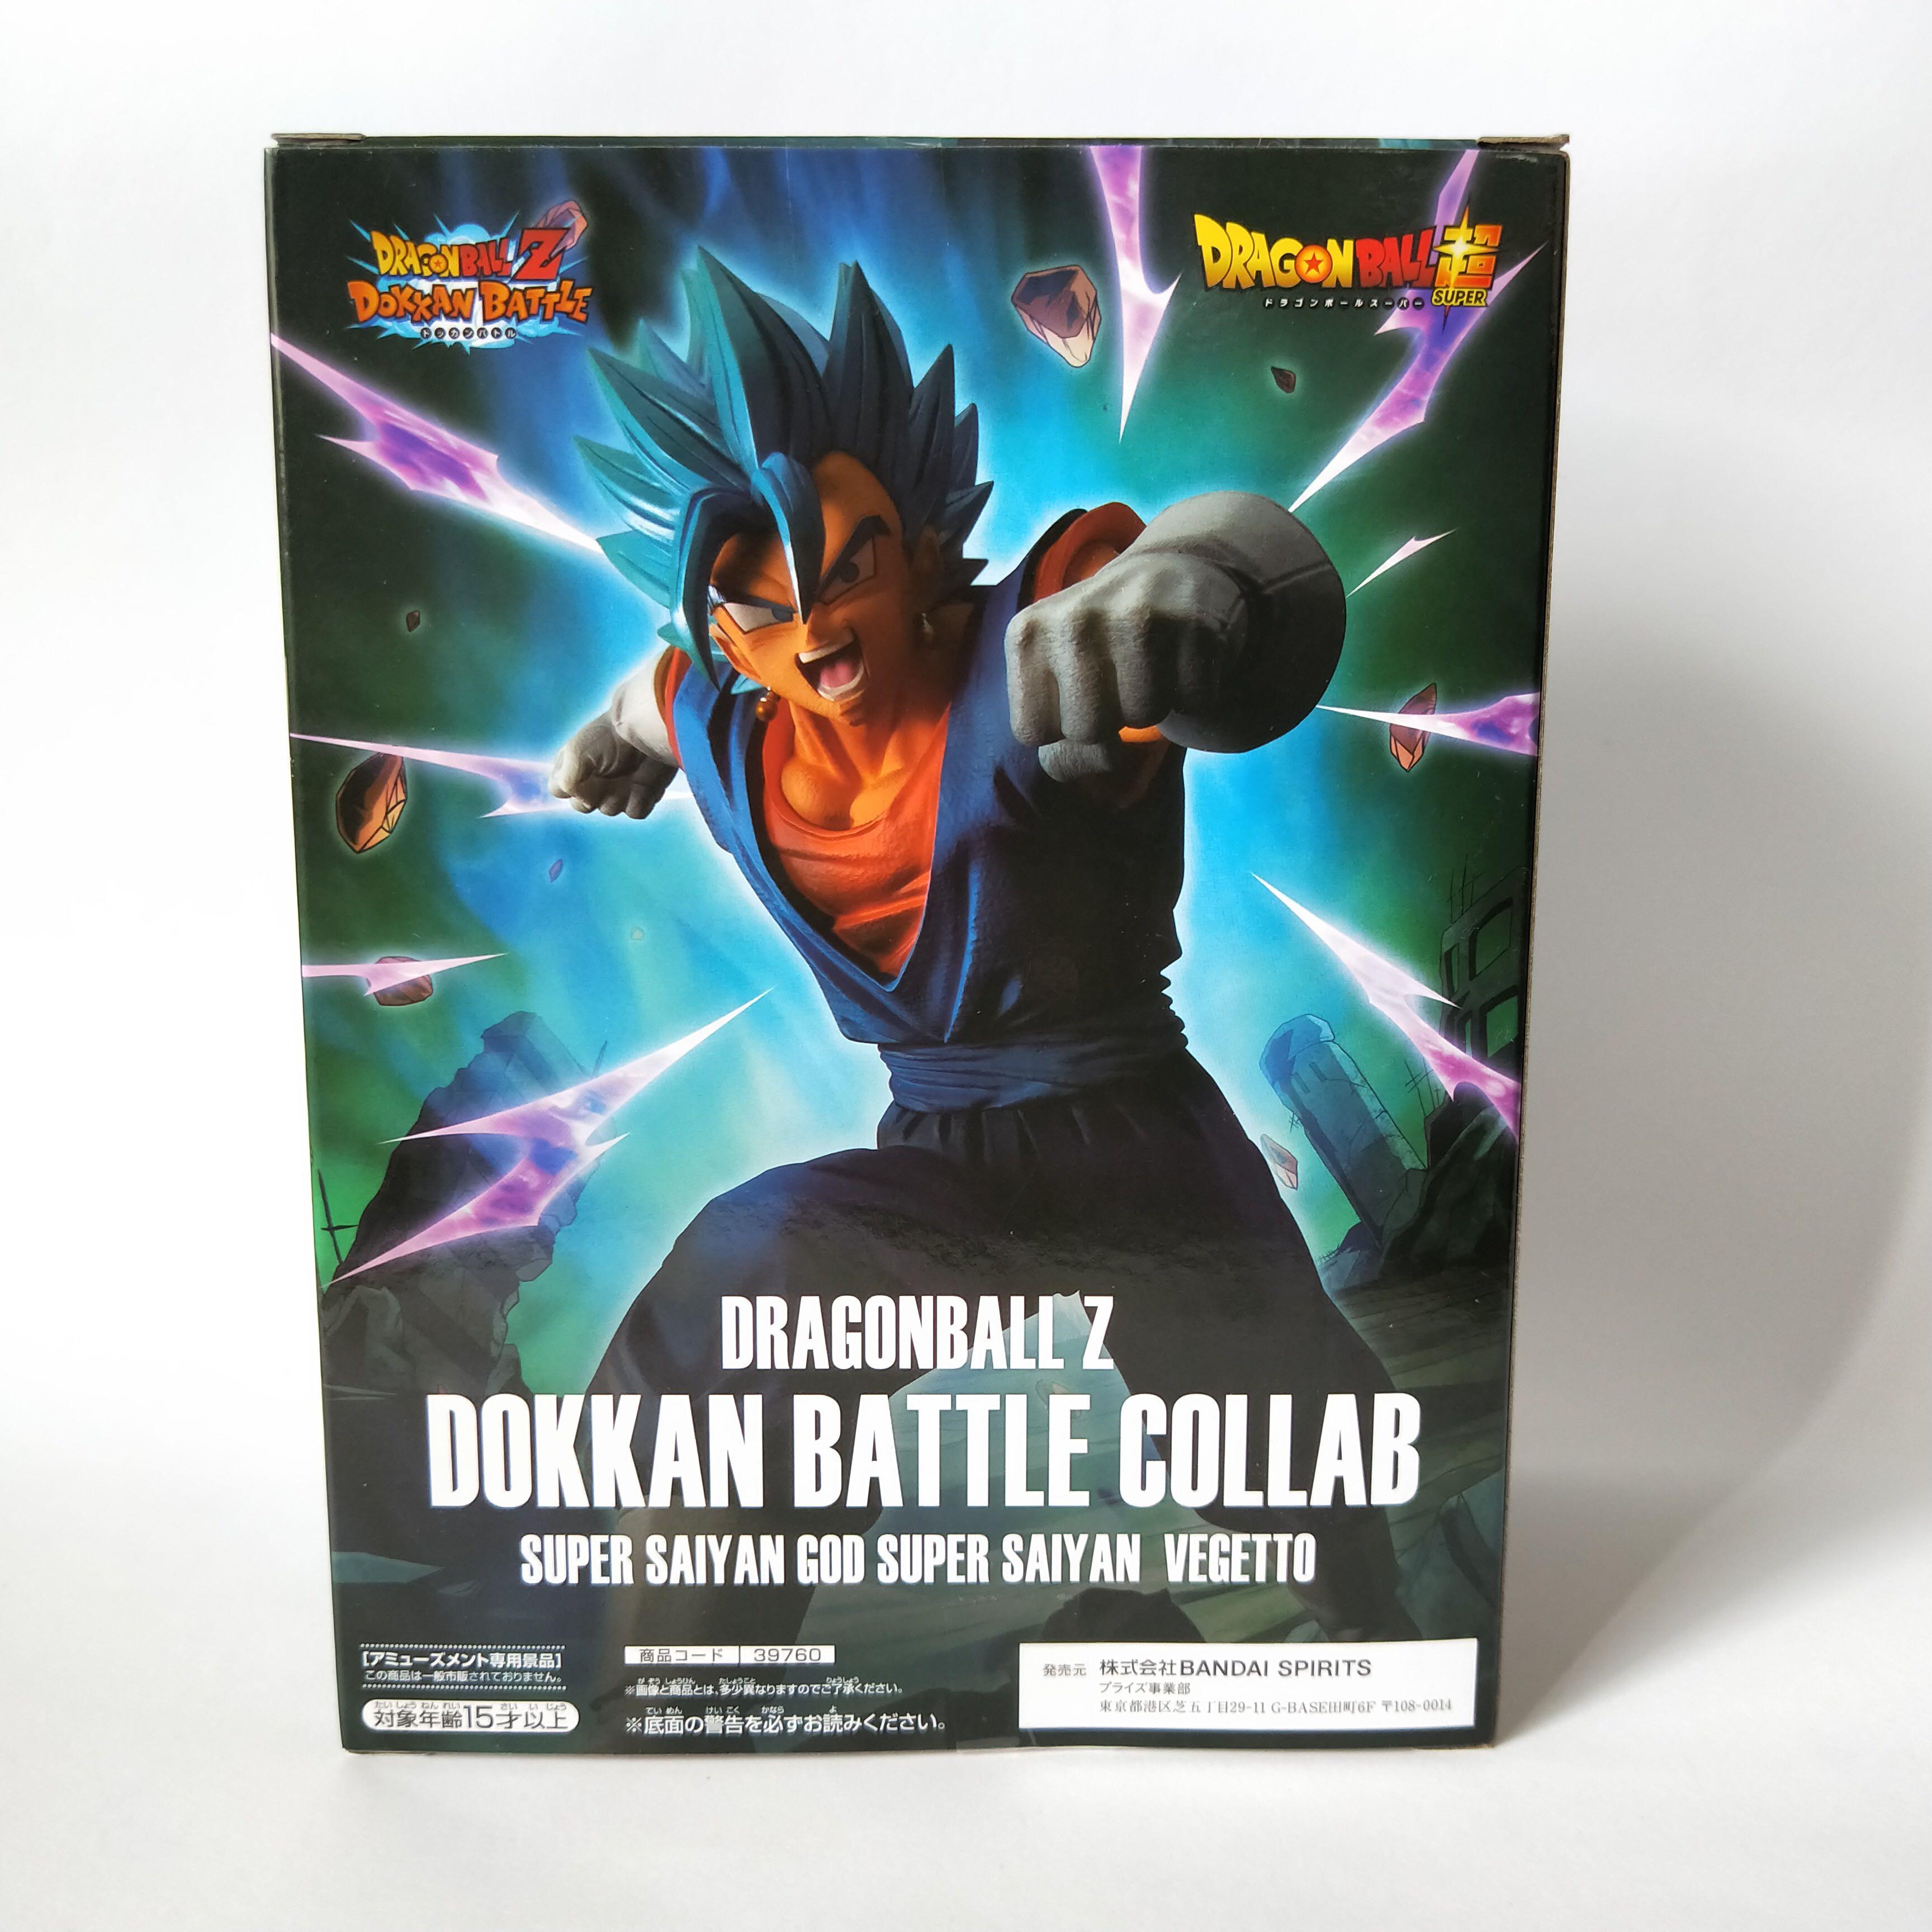 Dragon Ball Z Dokkan Battle Collab Super Saiyan God Vegito Figure by Banpreto